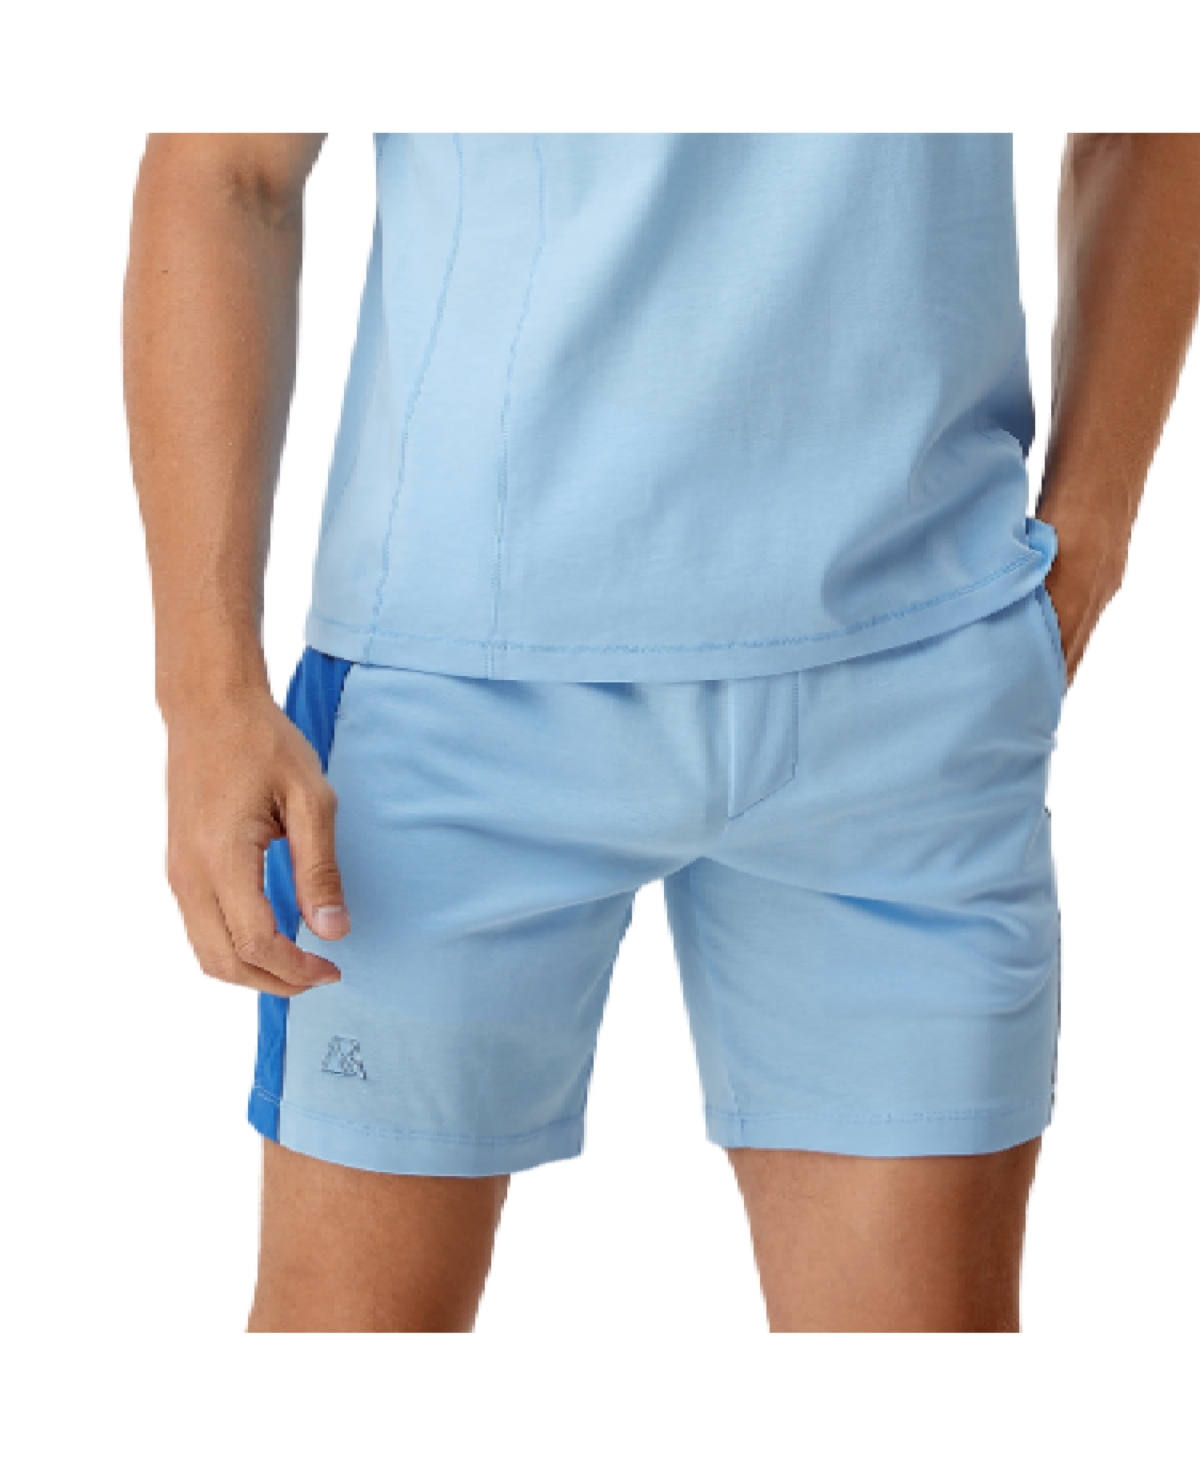 Men's Bellemere Men s Two-Tone Cotton Shorts - Blue